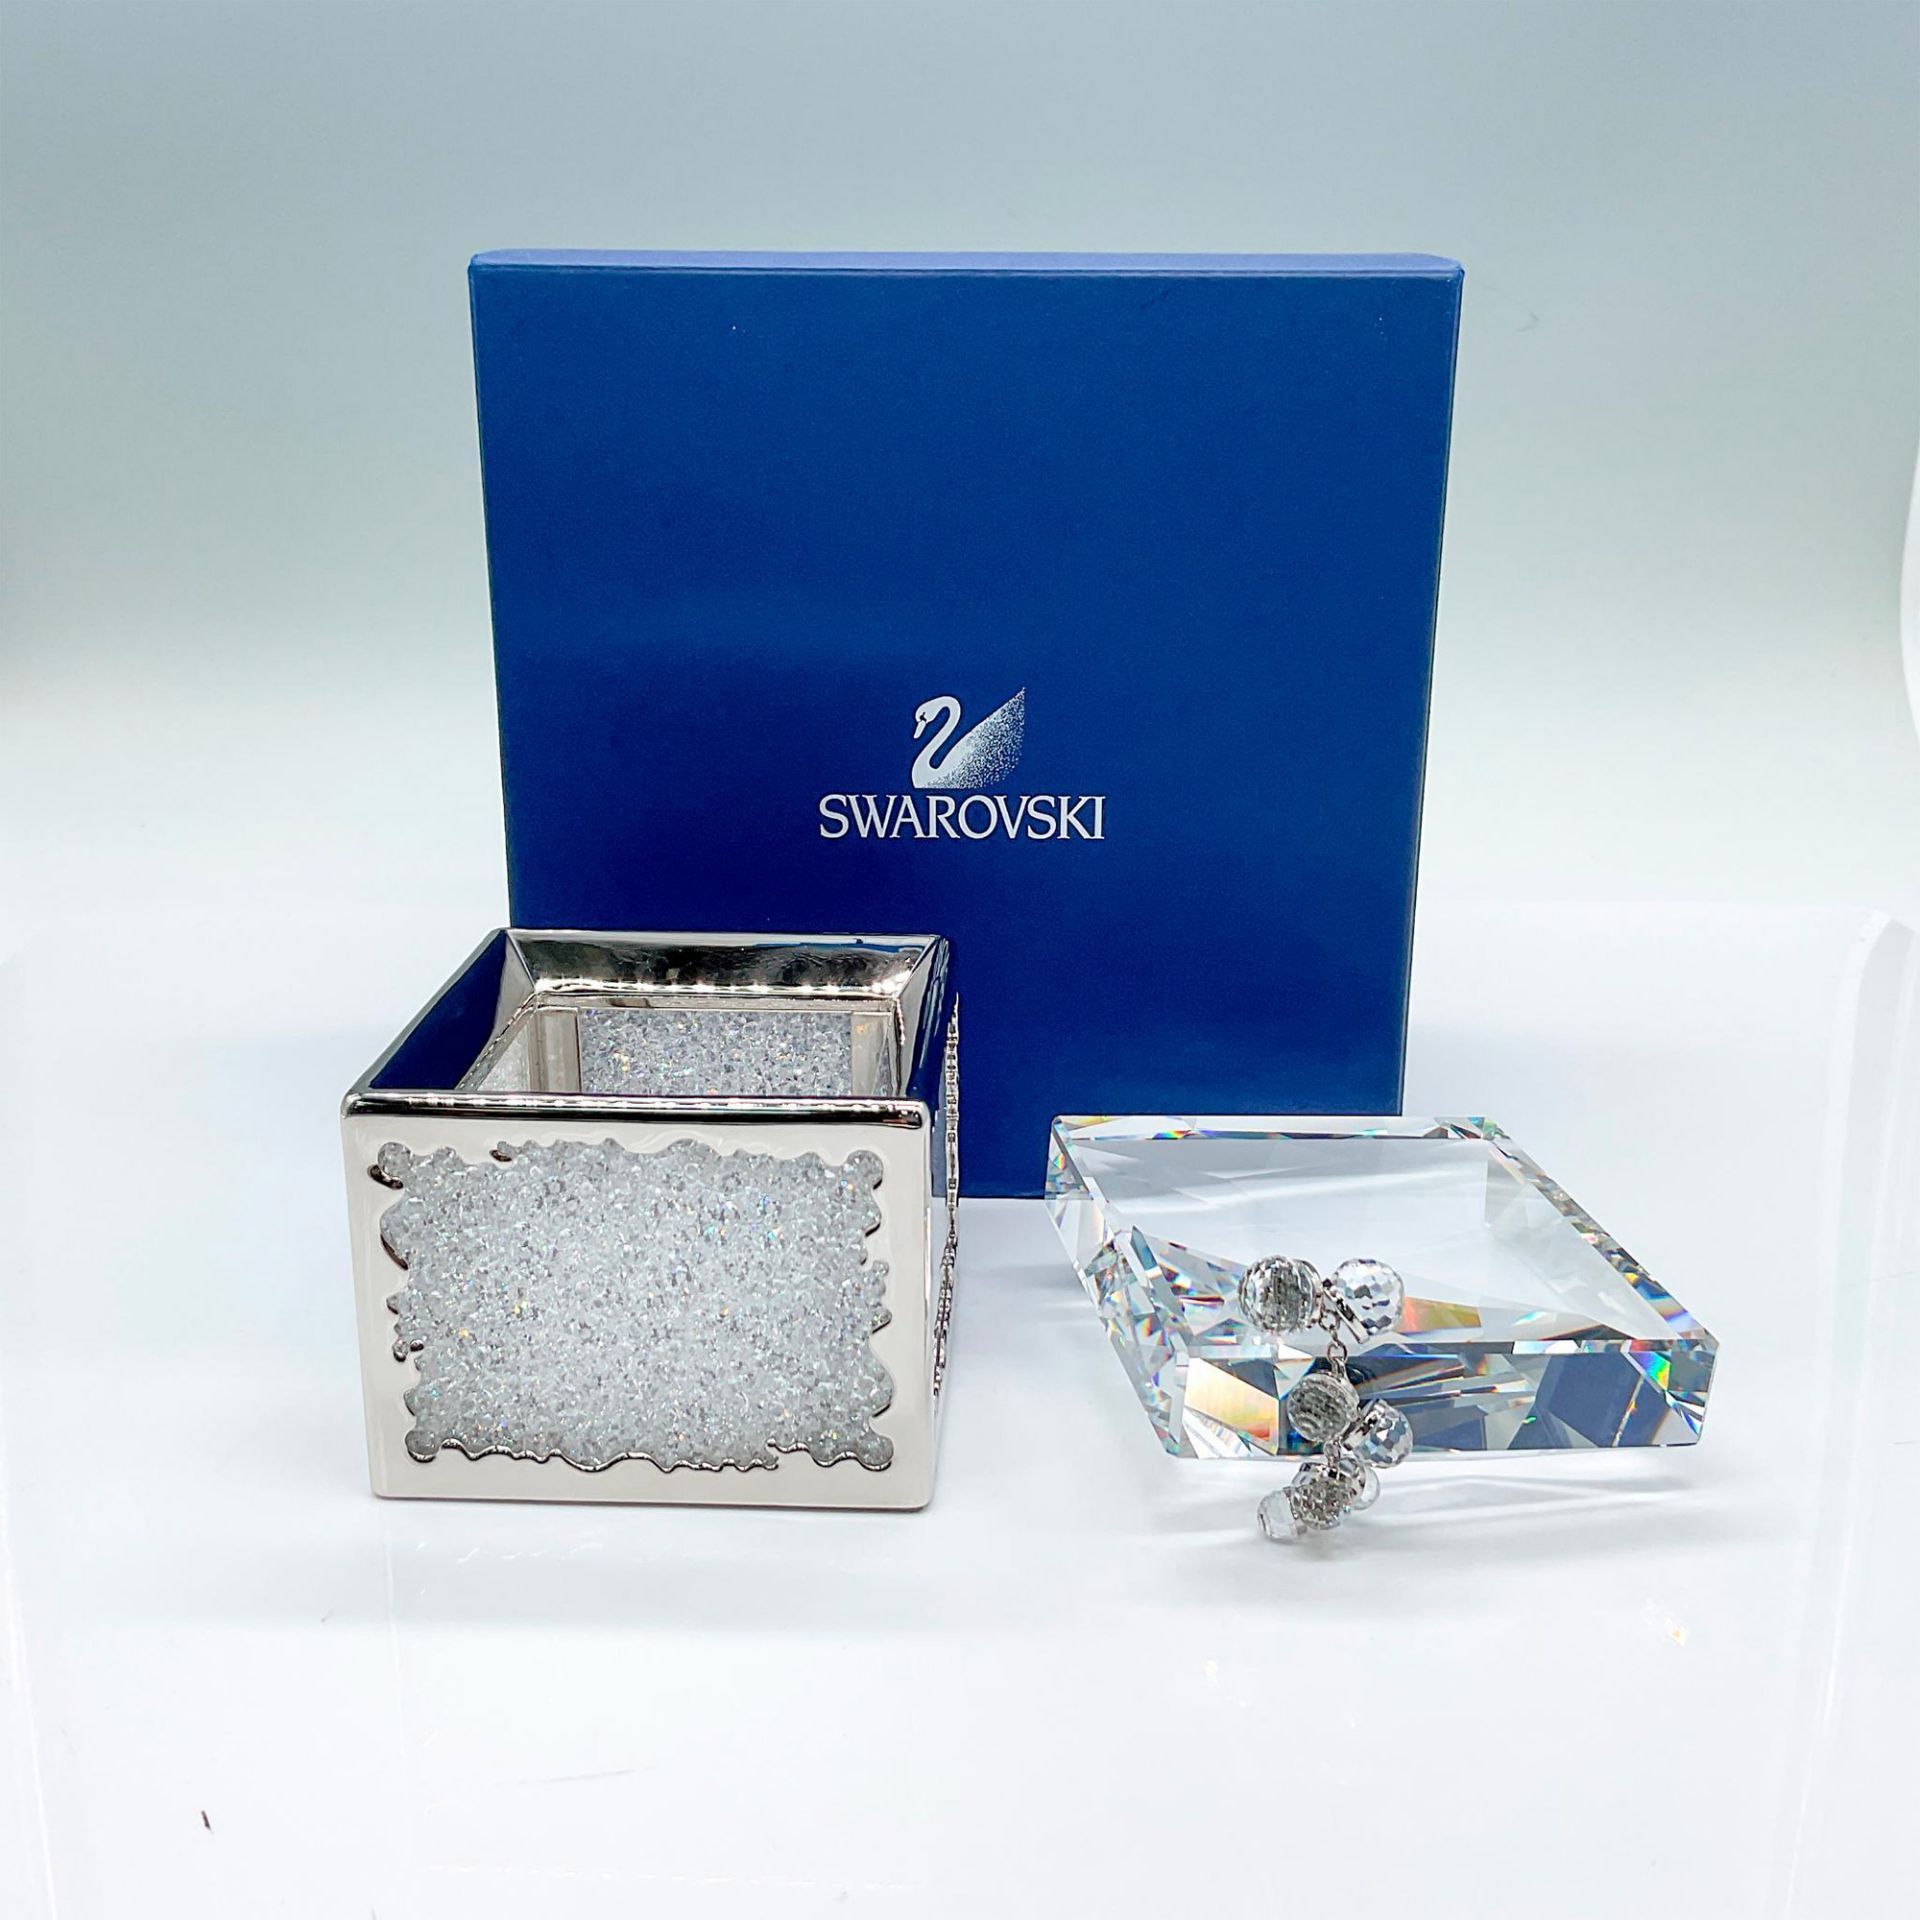 Swarovski Crystal Box, Crystalline Treasure - Image 2 of 3